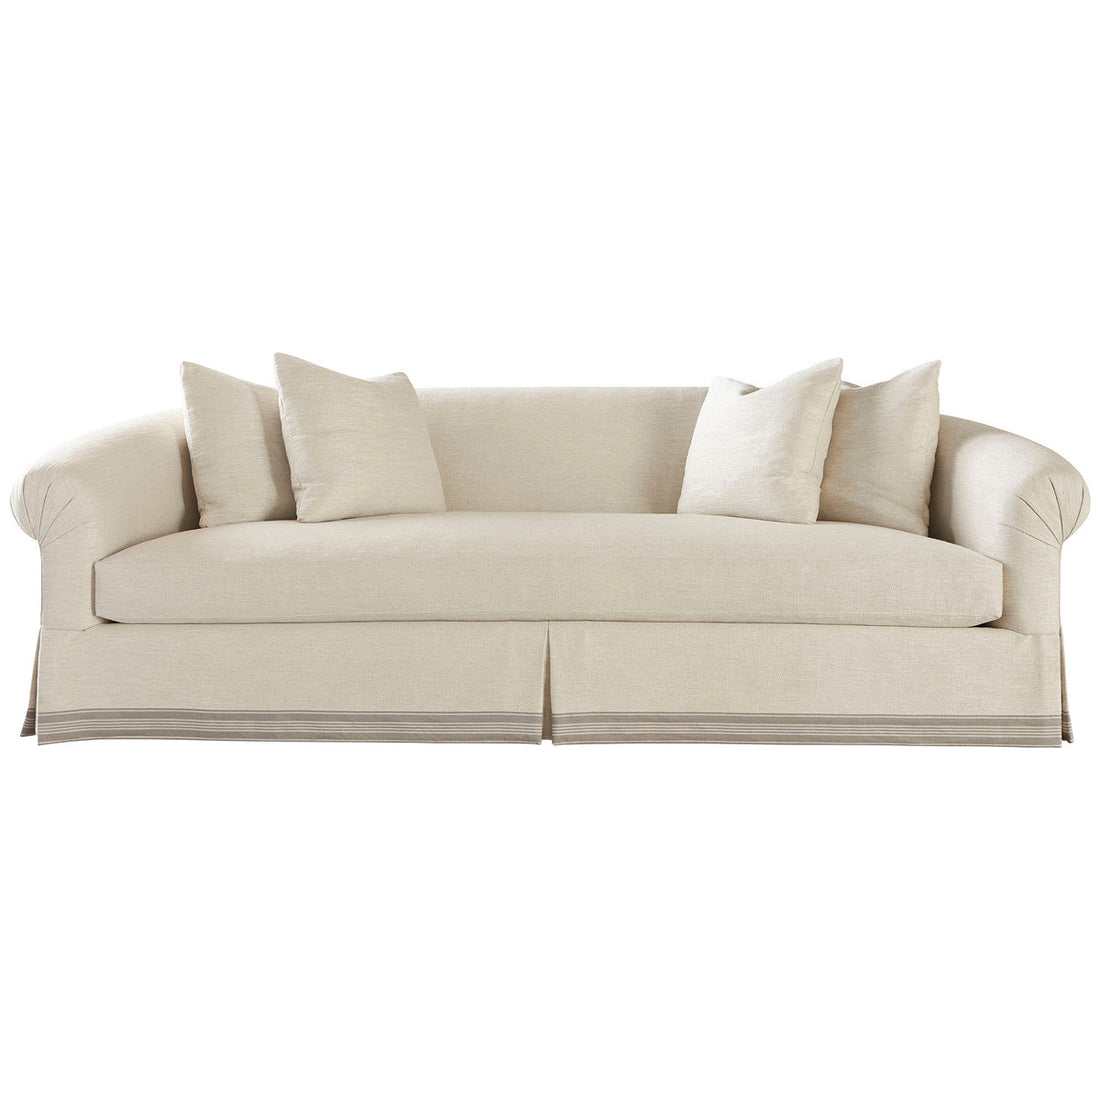 Baker Furniture Antoinette Sofa Lounge BA6286S